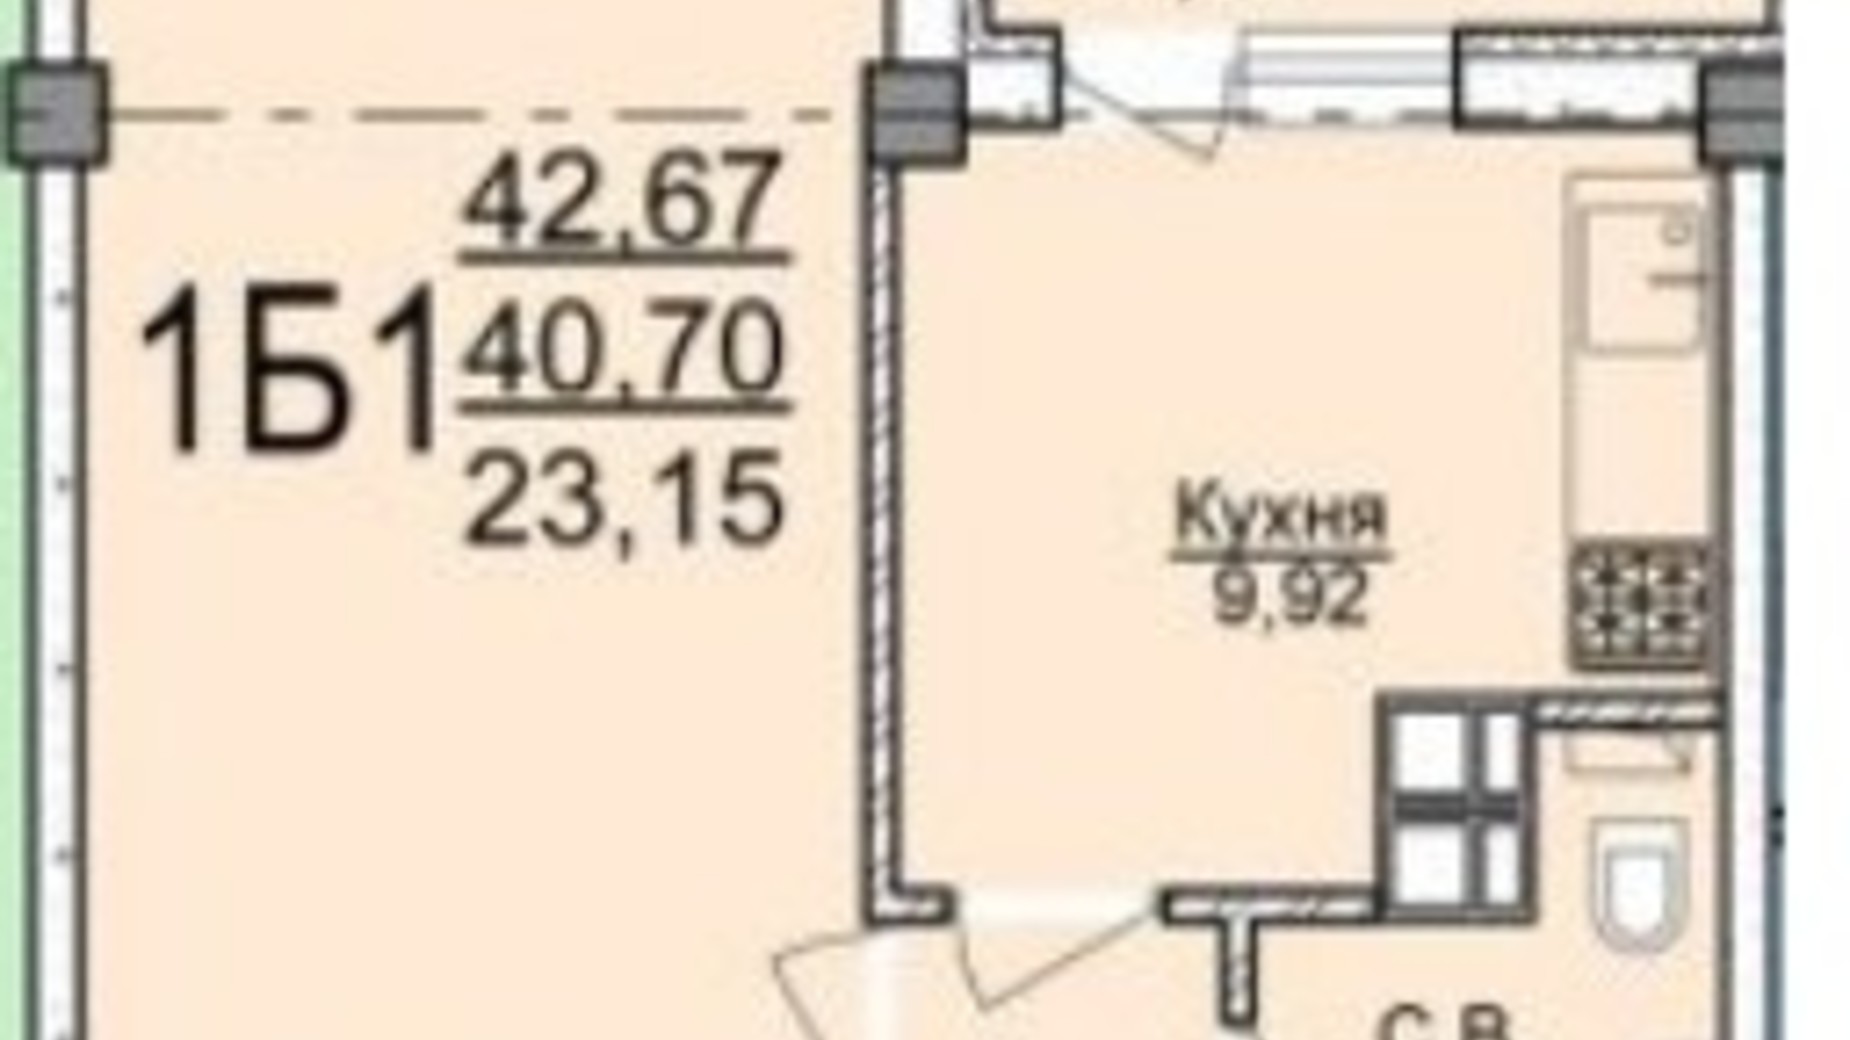 Планування 1-кімнатної квартири в ЖК вул. Пушкіна 42.67 м², фото 250715